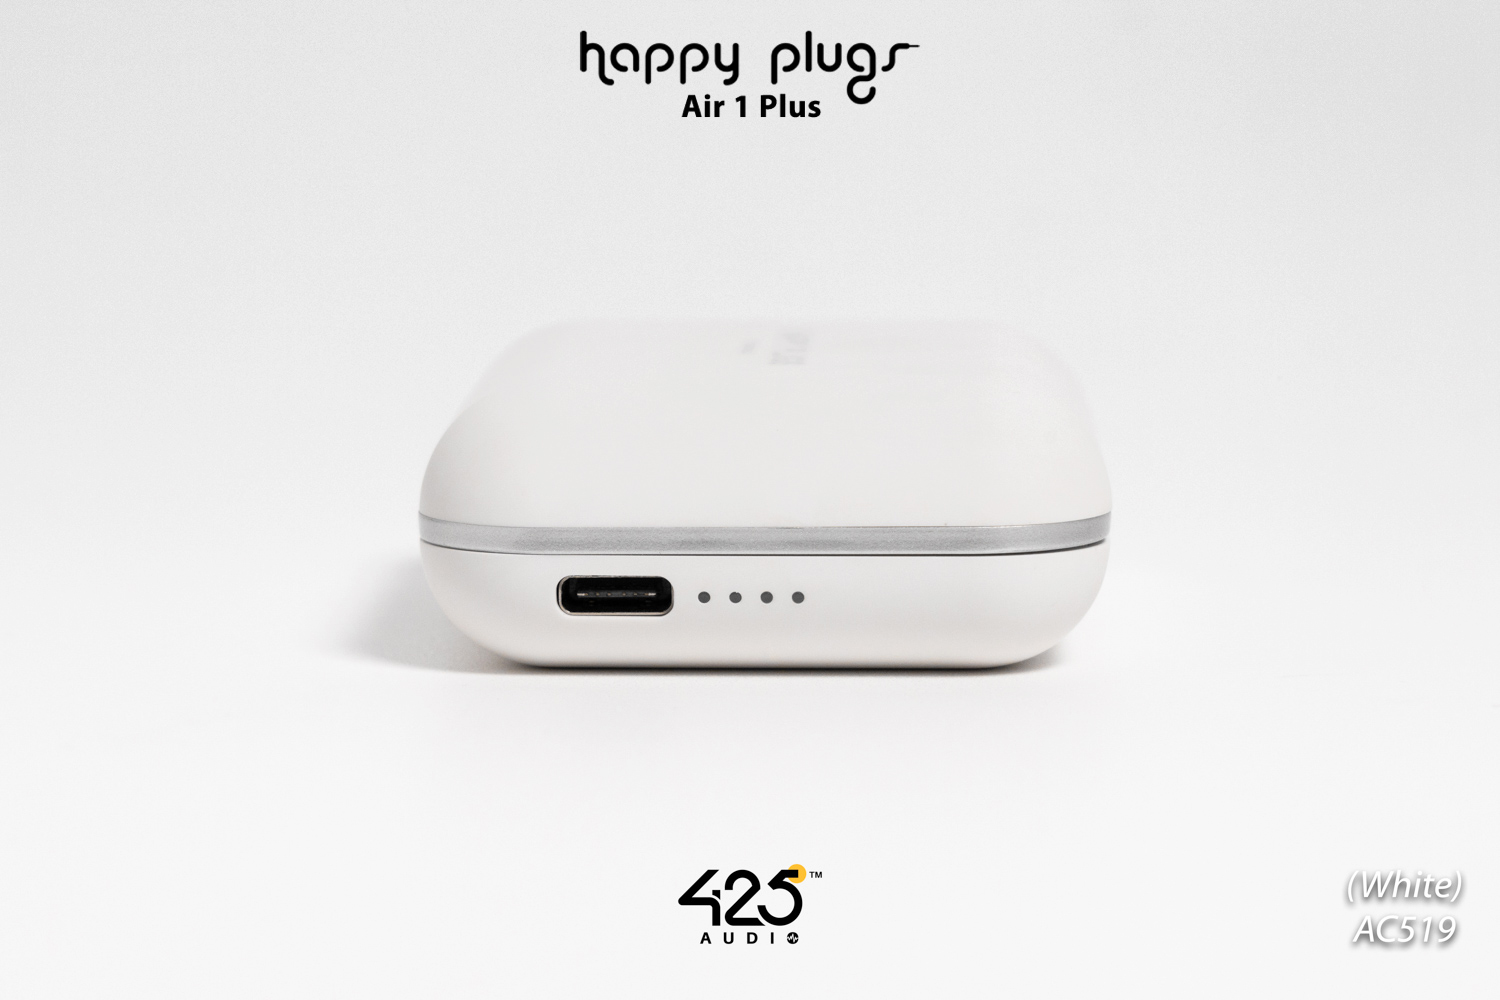 happyplugs_air1_plus